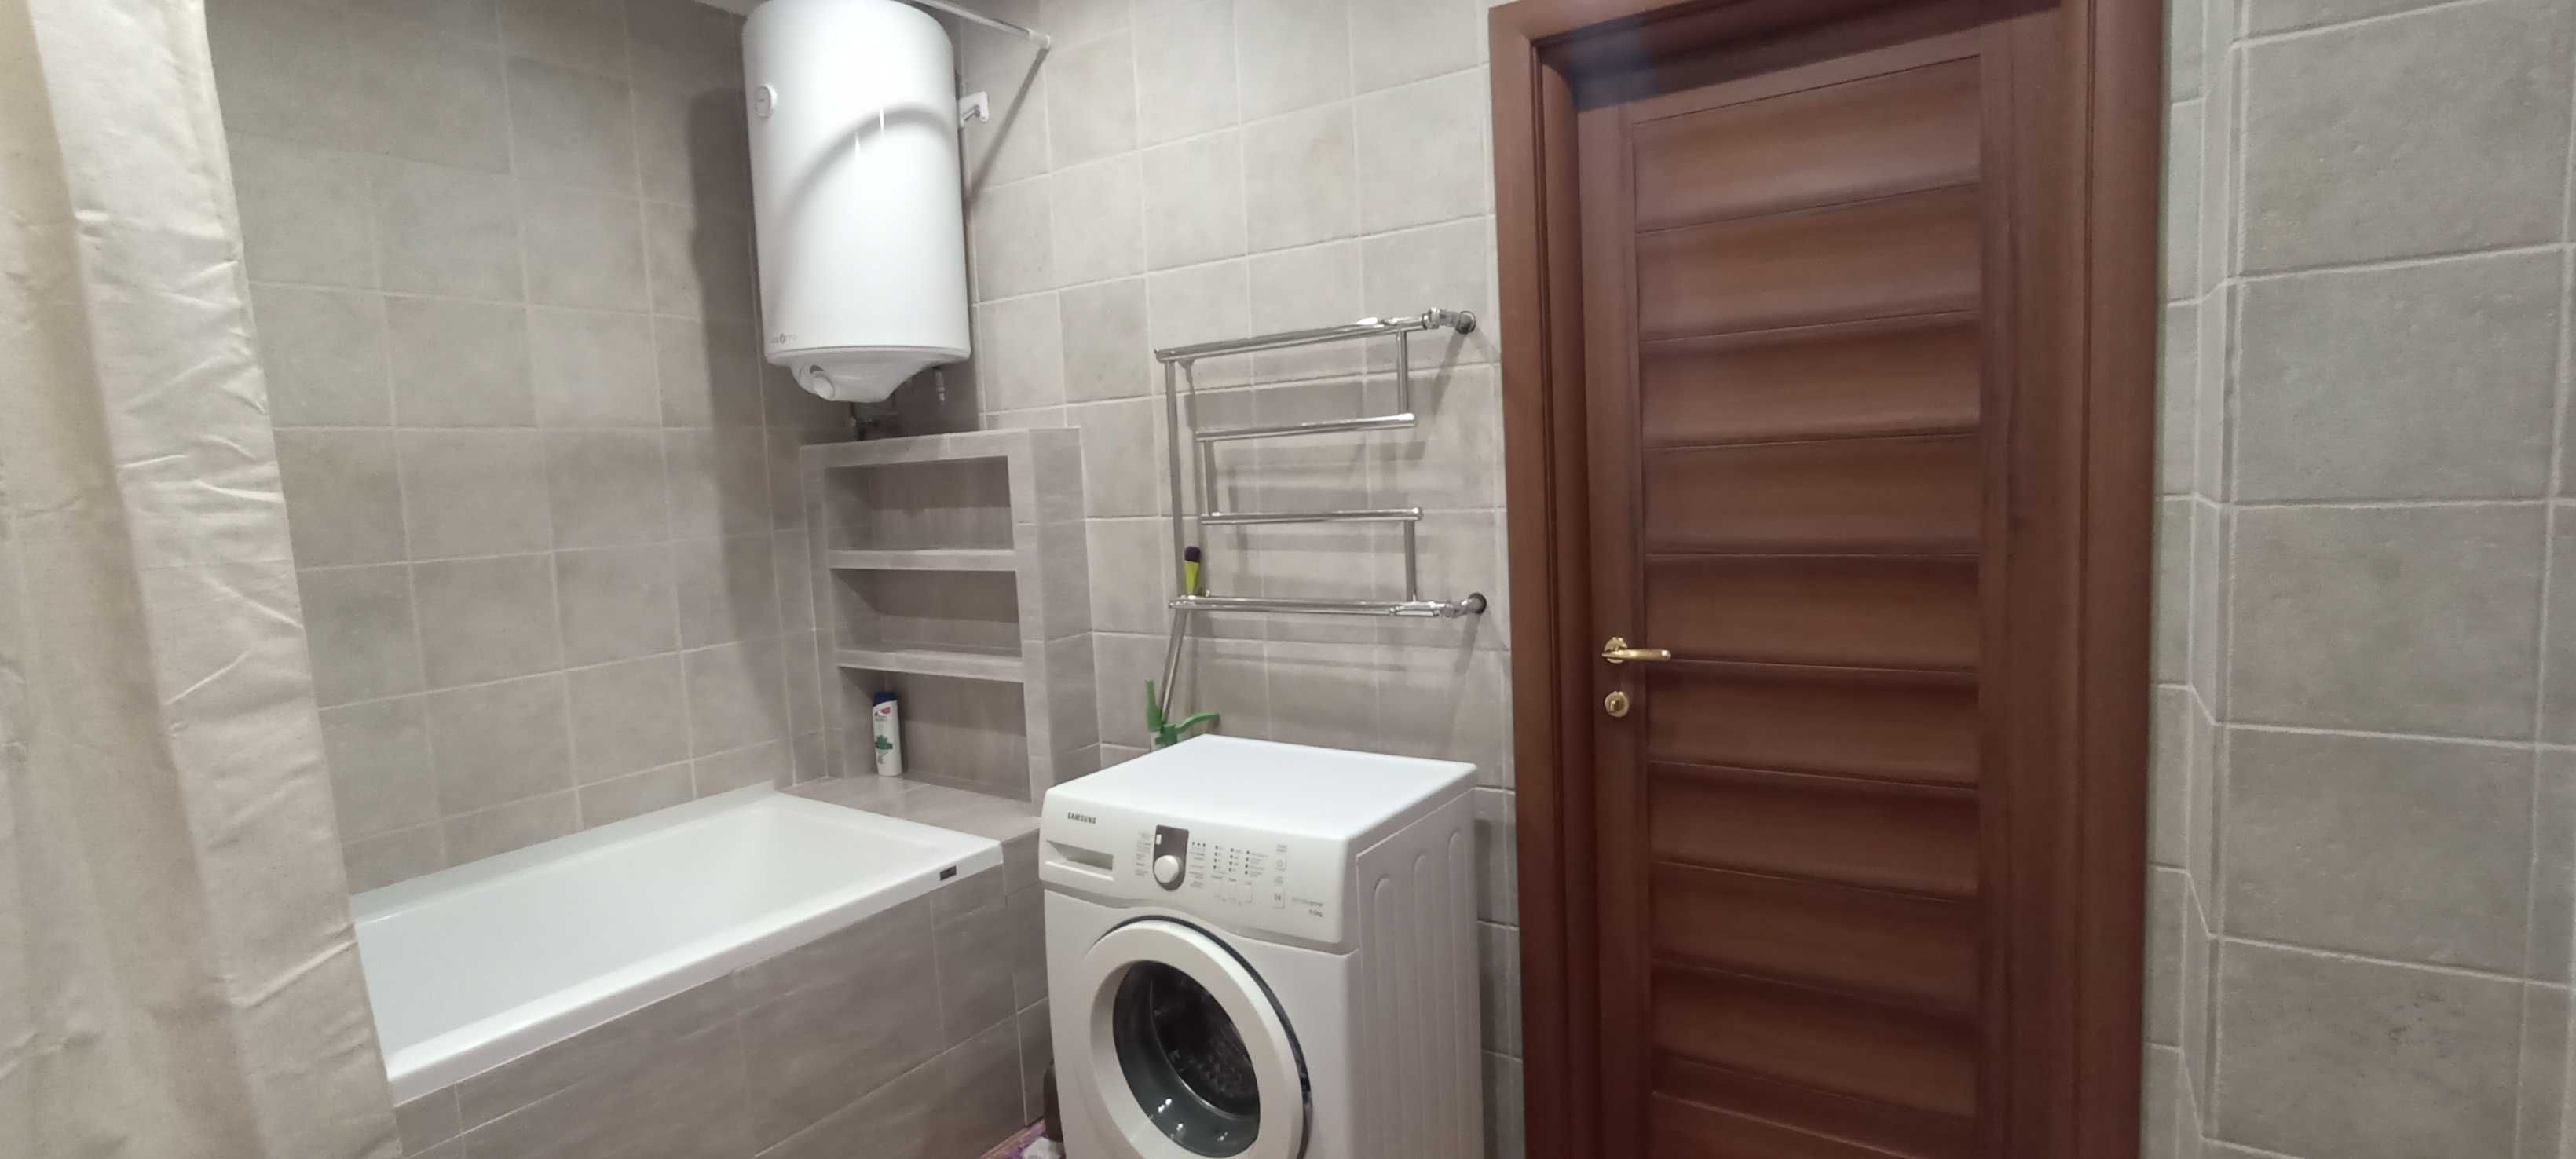 Продам 2-кімнатну квартиру на Бочарова